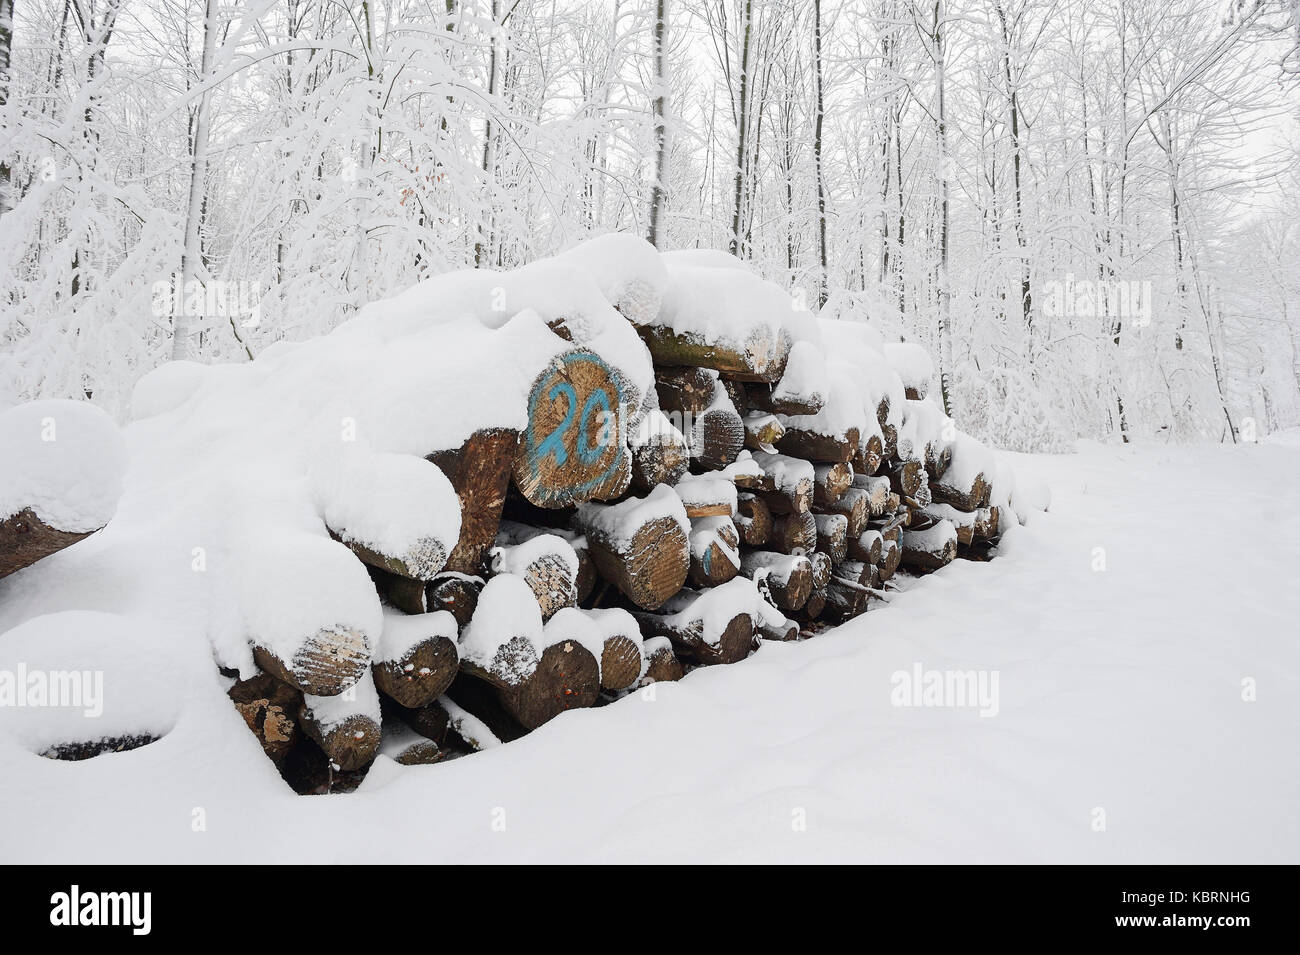 Tas de bois en hiver, en Rhénanie du Nord-Westphalie, Allemagne | Holzstapel im Winter, Nordrhein-Westfalen, Deutschland Banque D'Images